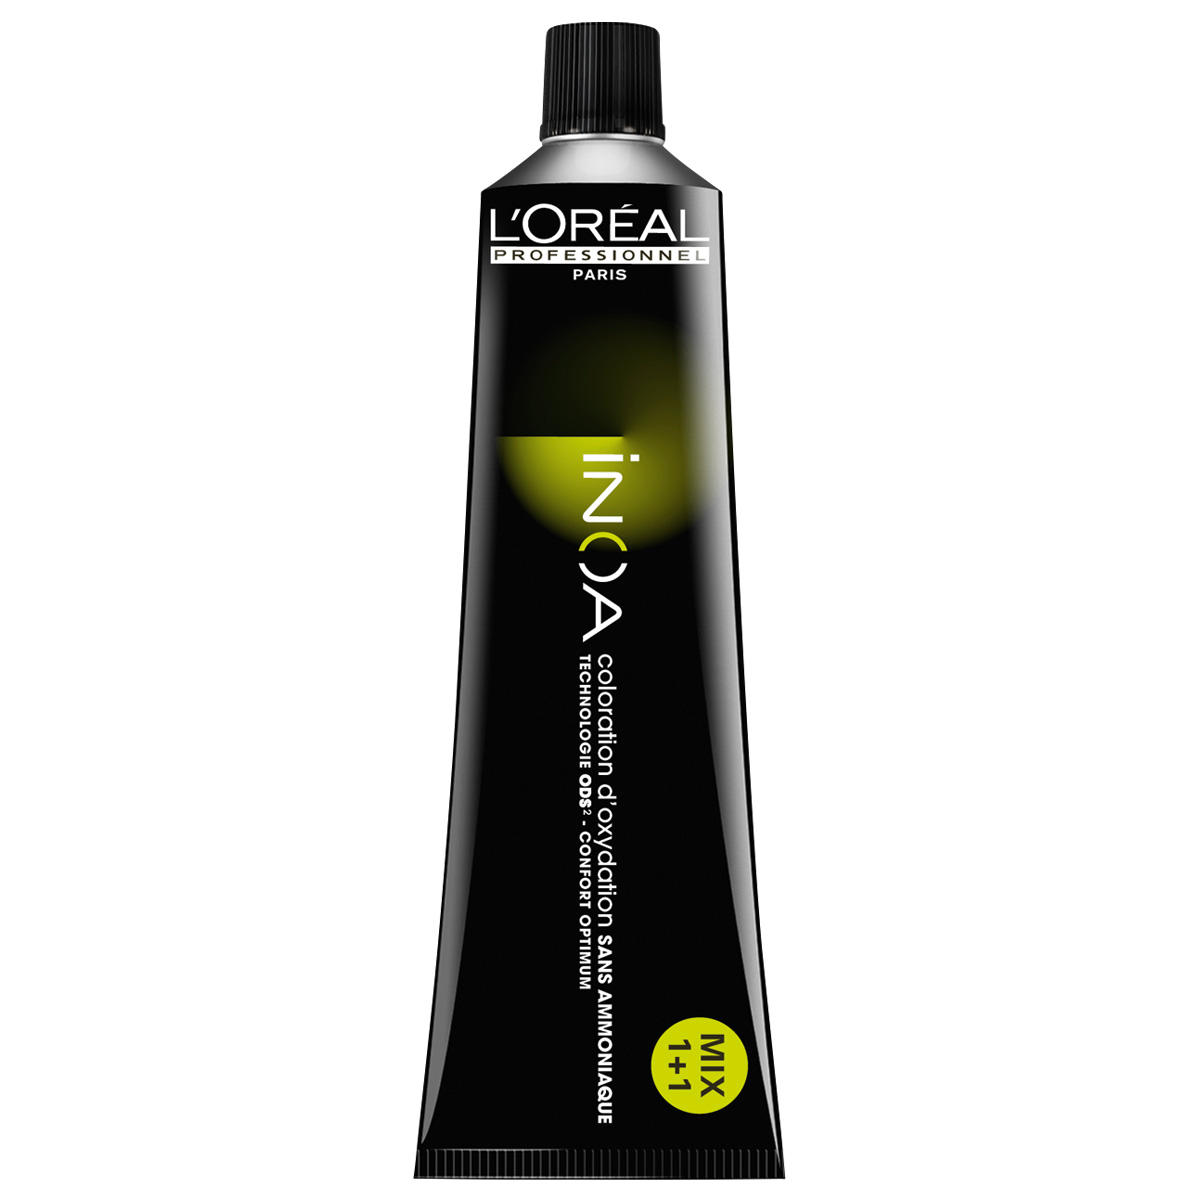 L'Oréal Professionnel Paris Coloration 6,8 blond foncé moka, Tube 60 ml